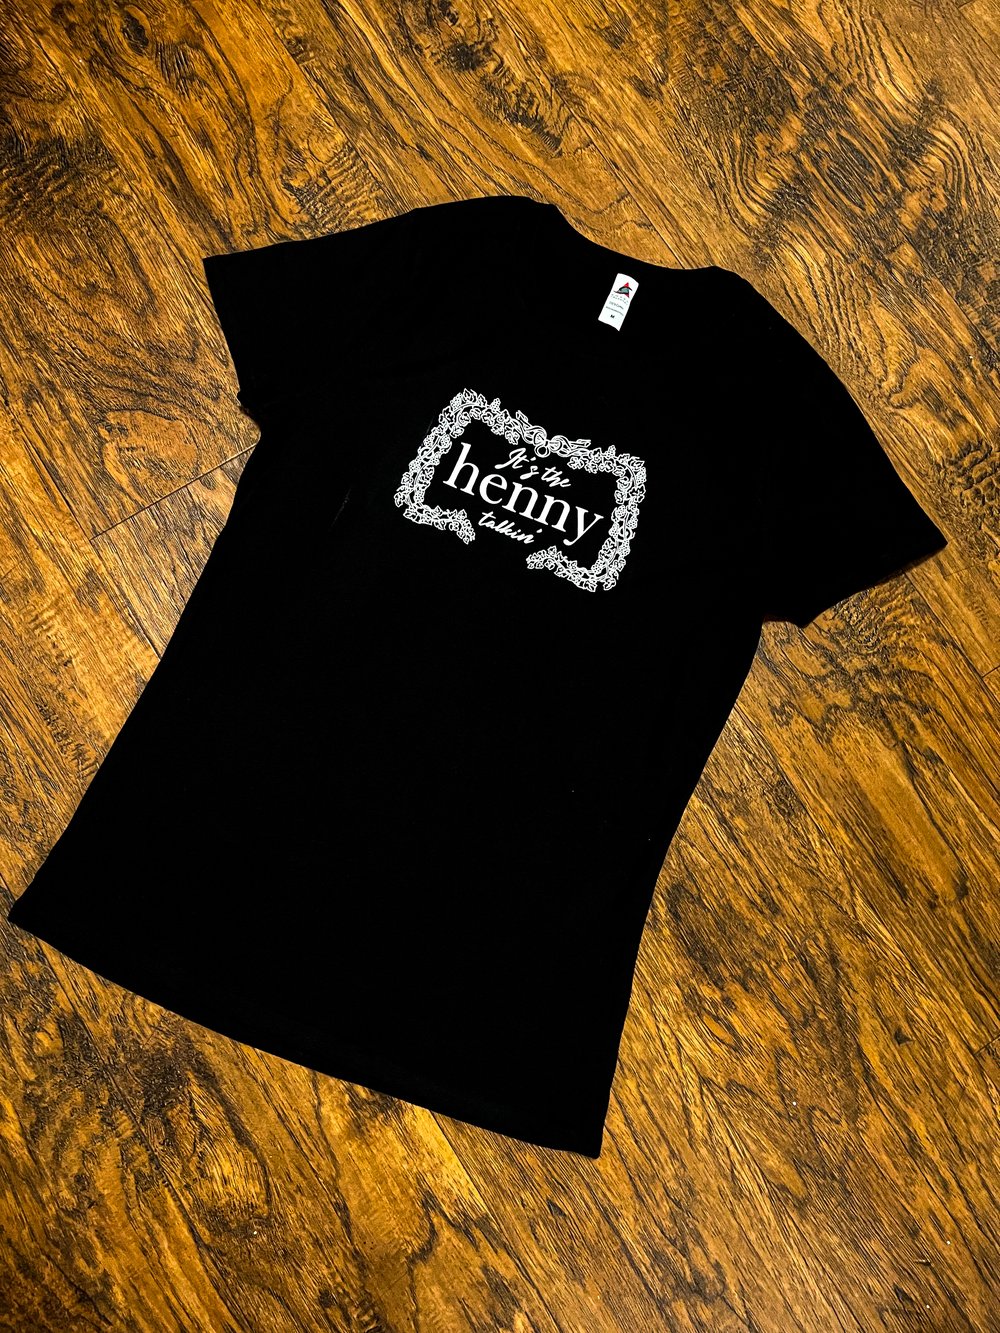 Image of “It’s the Henny talkin” Women’s t-shirt 